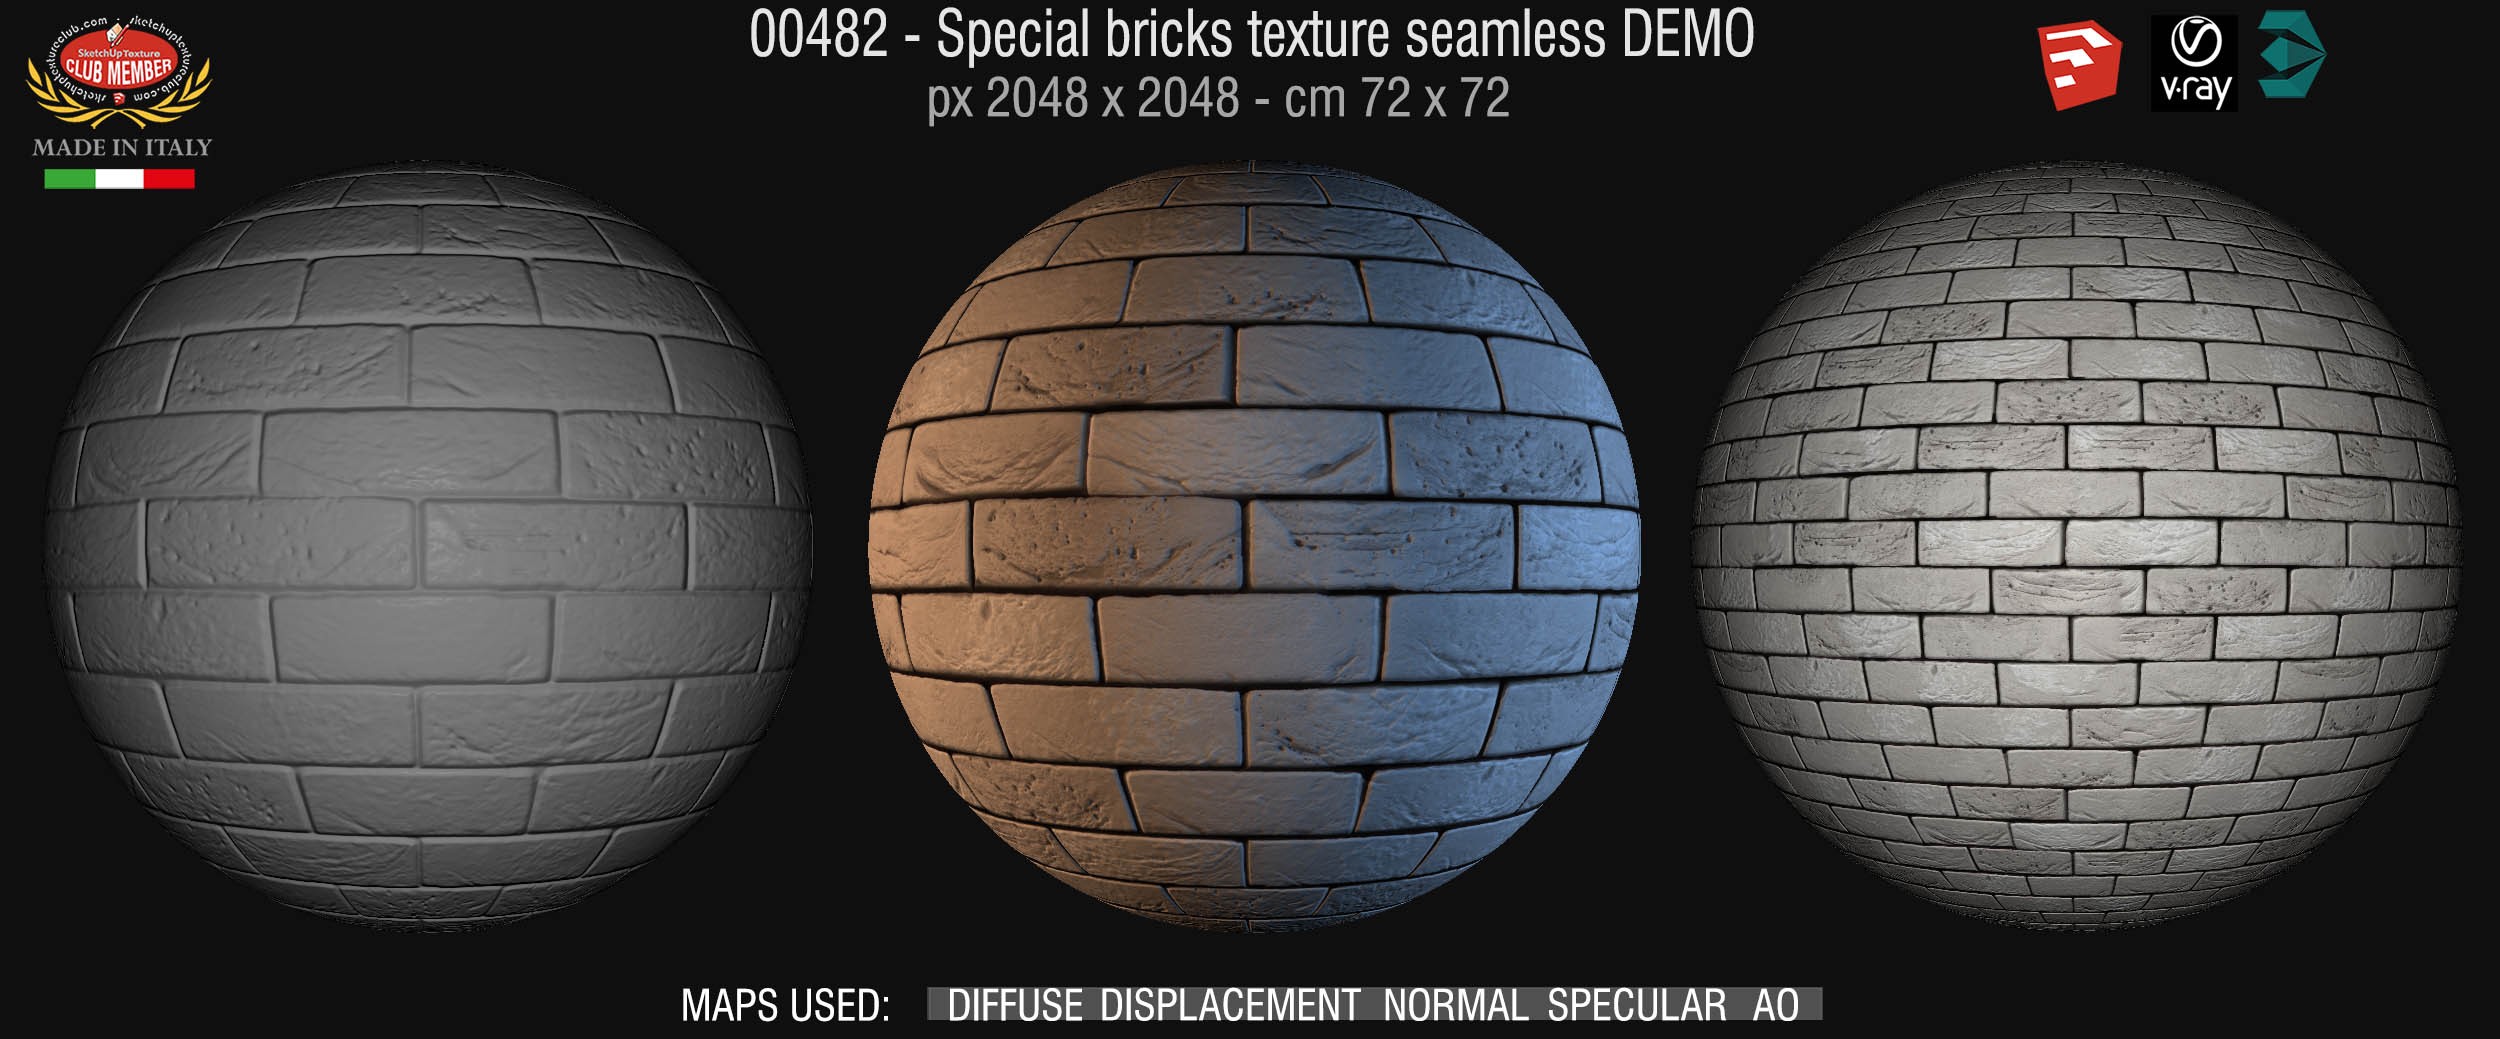 00482 Special bricks texture seamless + maps DEMO